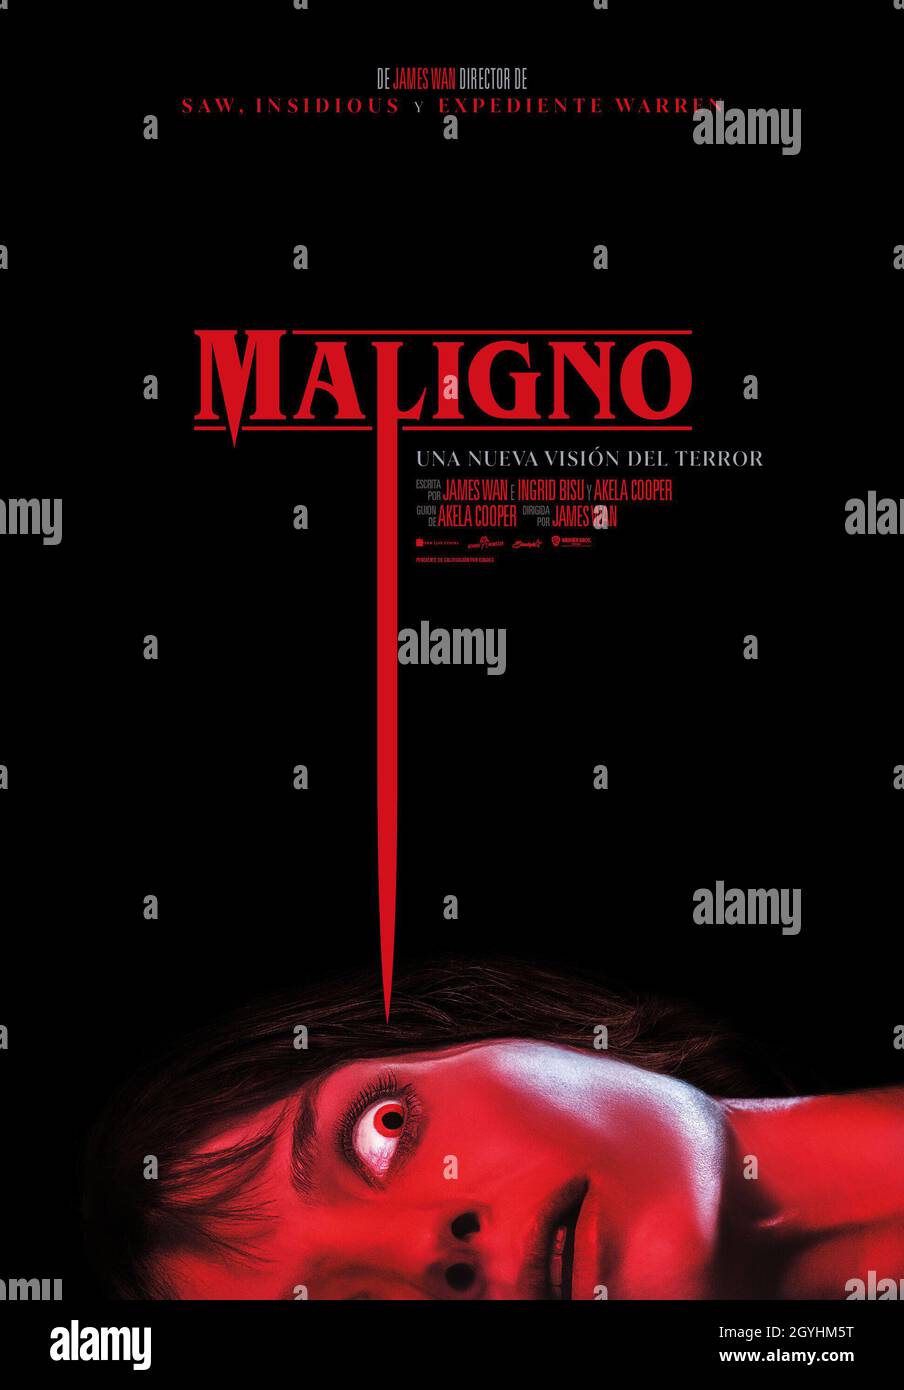 ANNABELLE WALLIS in MALIGNO (2021), diretto da JAMES WAN. Credito: Atomic Monster/Boom Entertainment/Boom! Studios/New Line Cinema/Starlight Culture Entertainment/Album Foto Stock